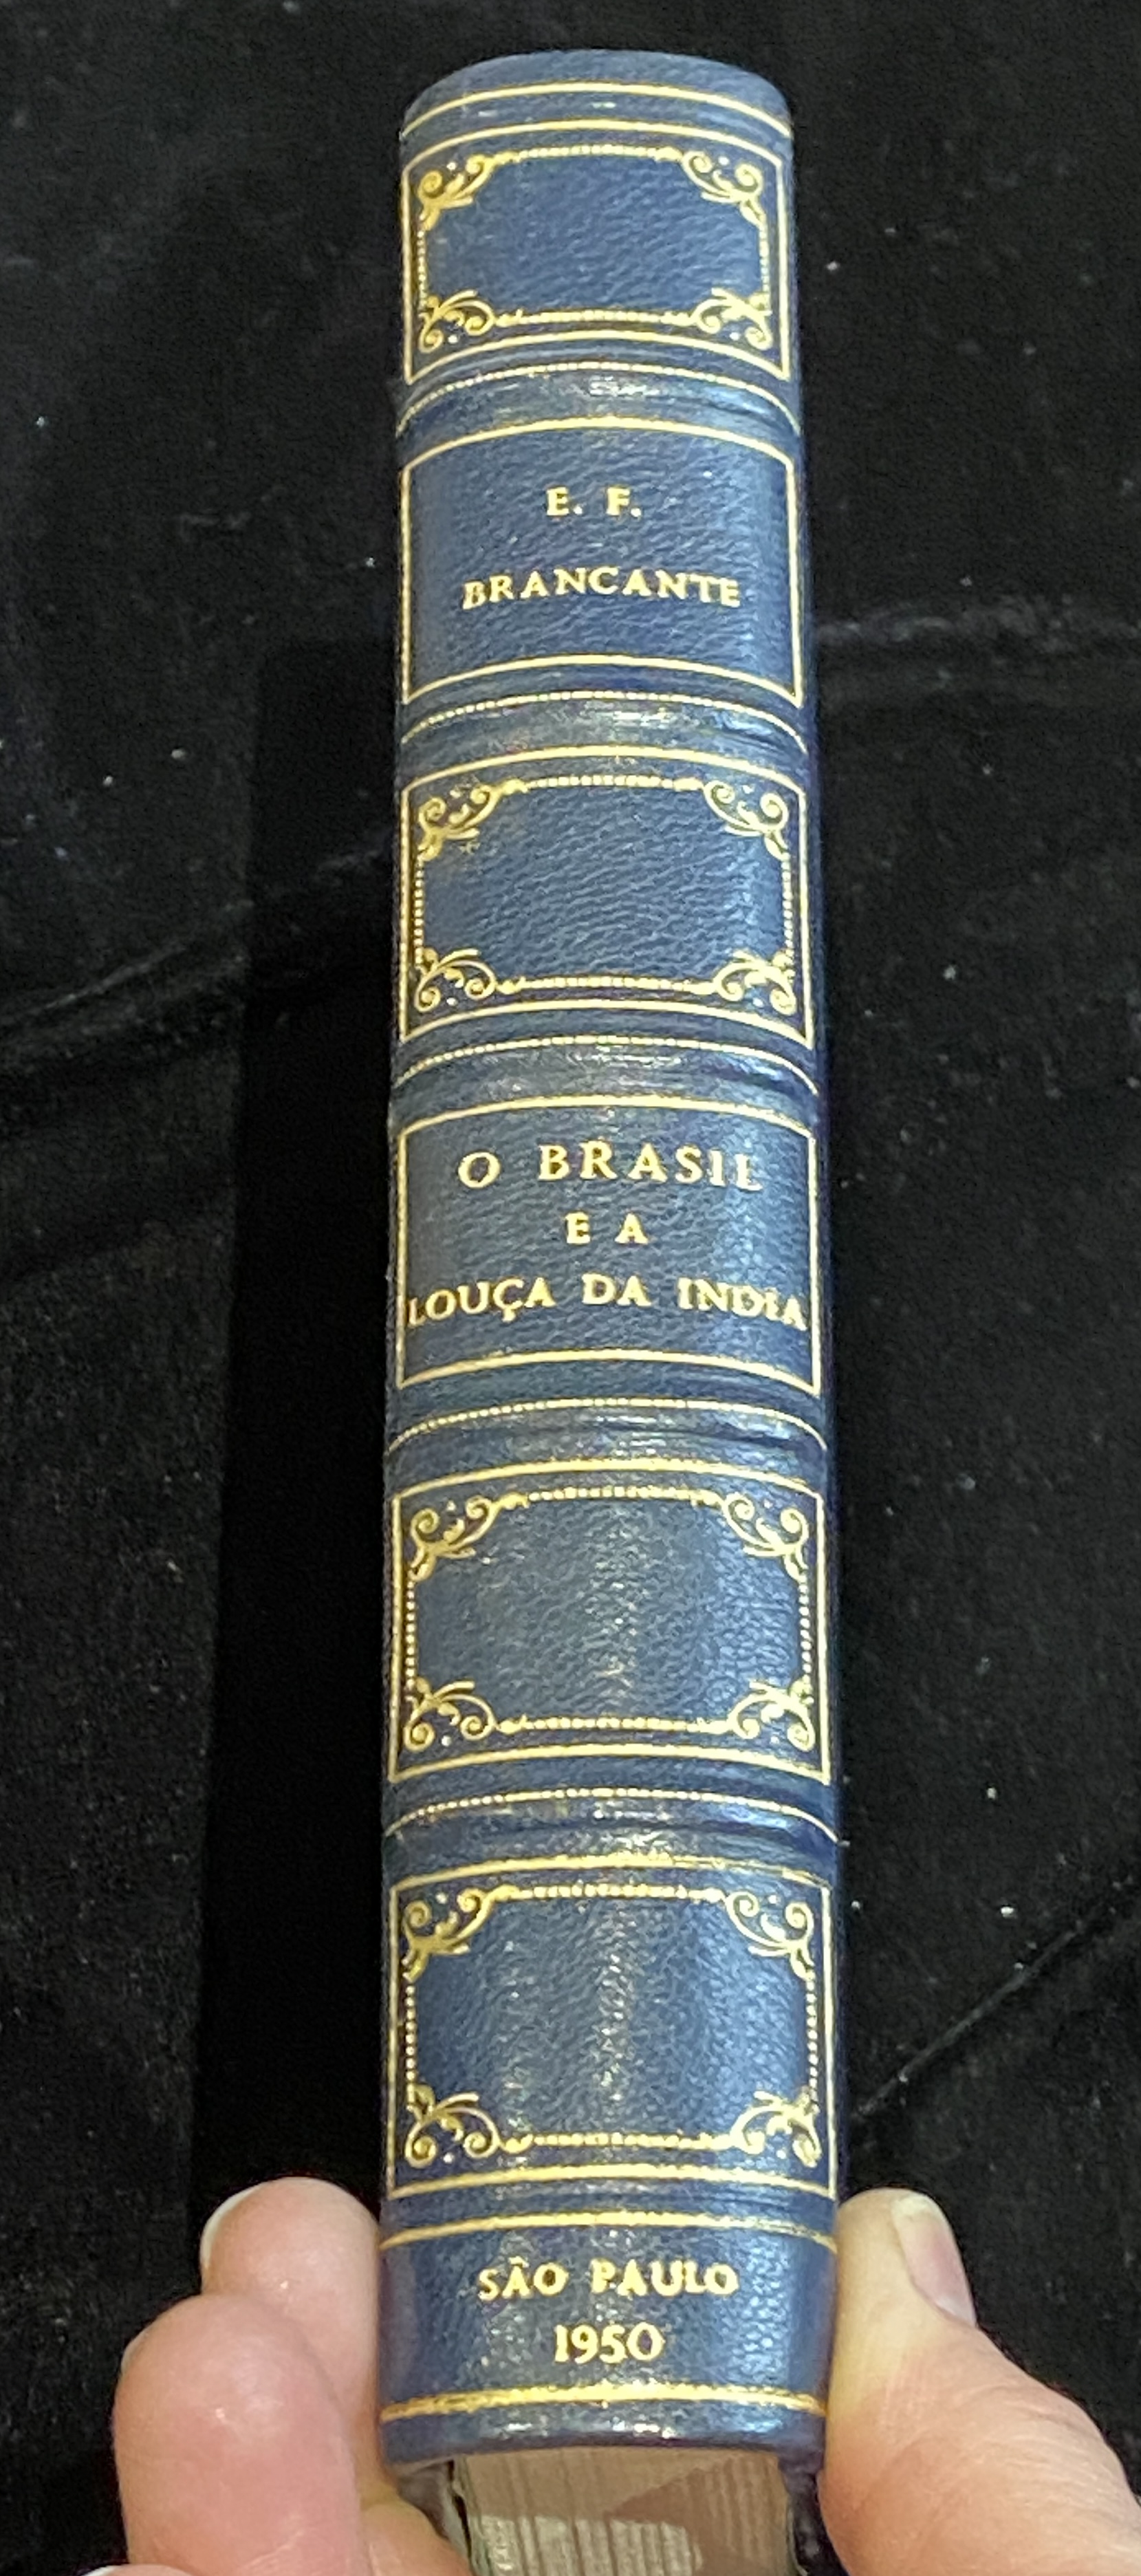 O BRASIL E A LOUÇA DE INDIA, ELDINO DA FONSECA BRANCANTE, SÃO PAOLO, 1950 - Image 10 of 10